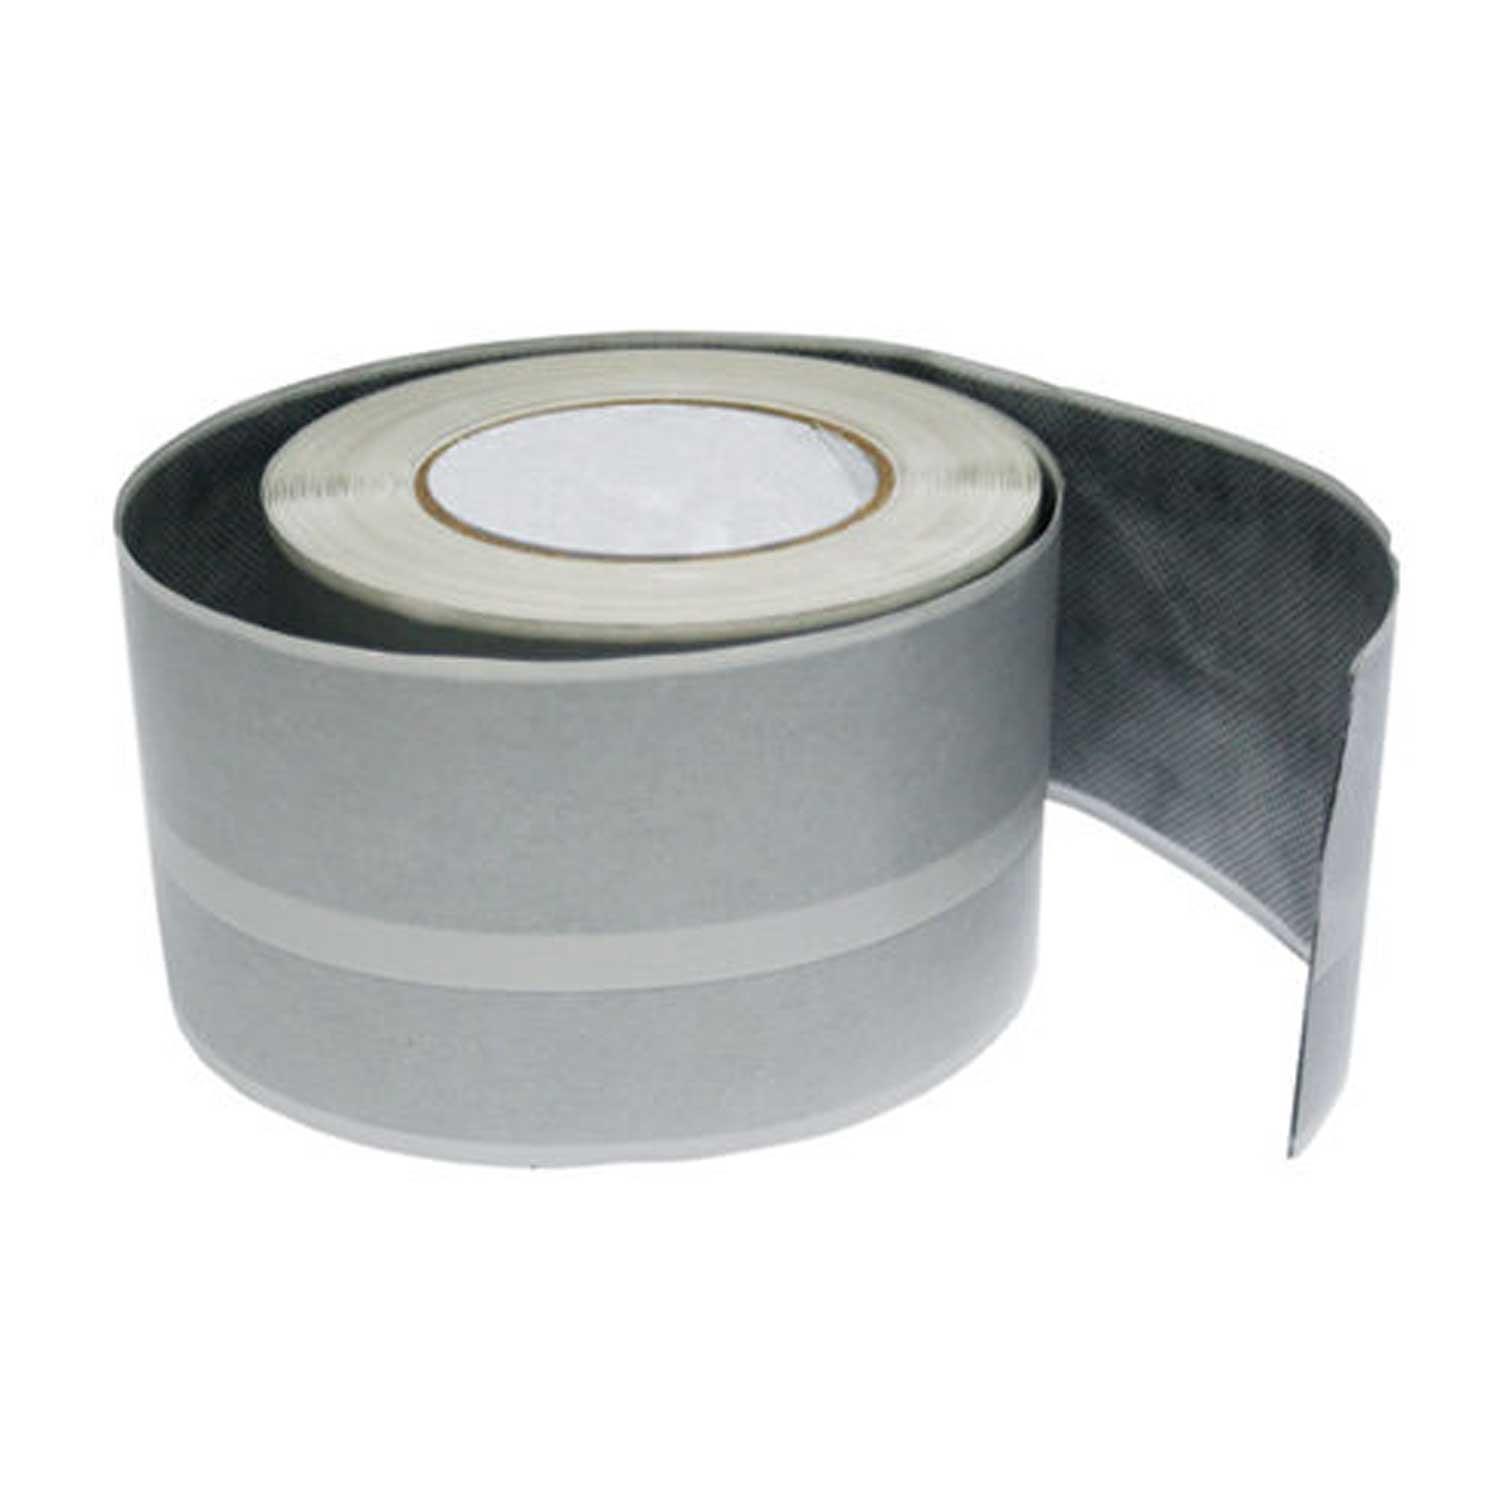 Marmox Self Adhesive Waterproof Tape 10mtr